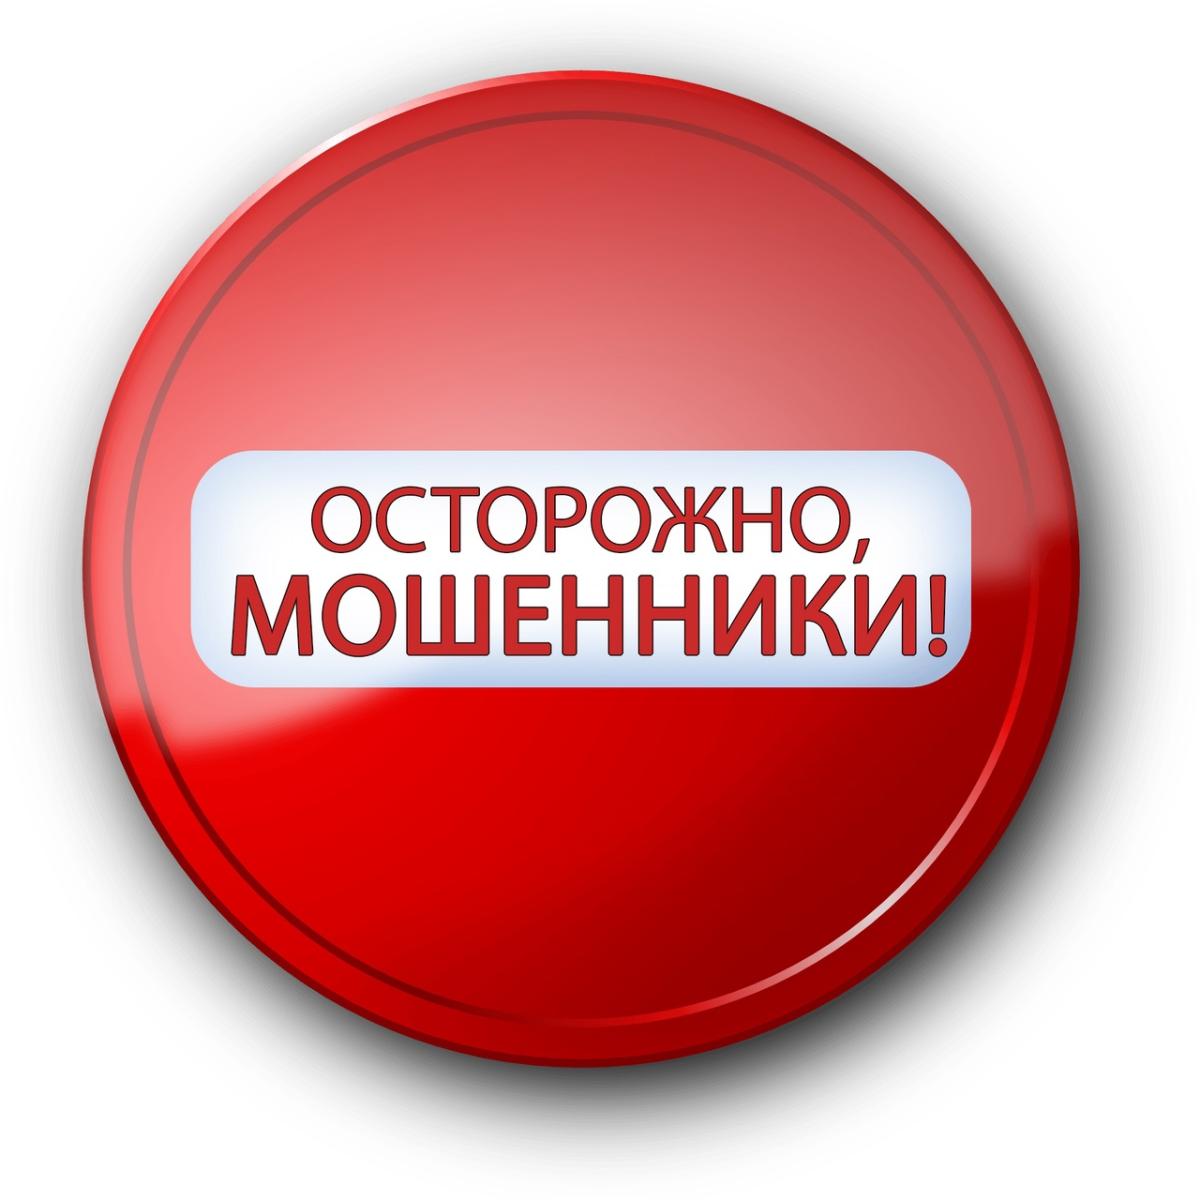 Жителя Московской области обманули при покупке машины в Мордовии